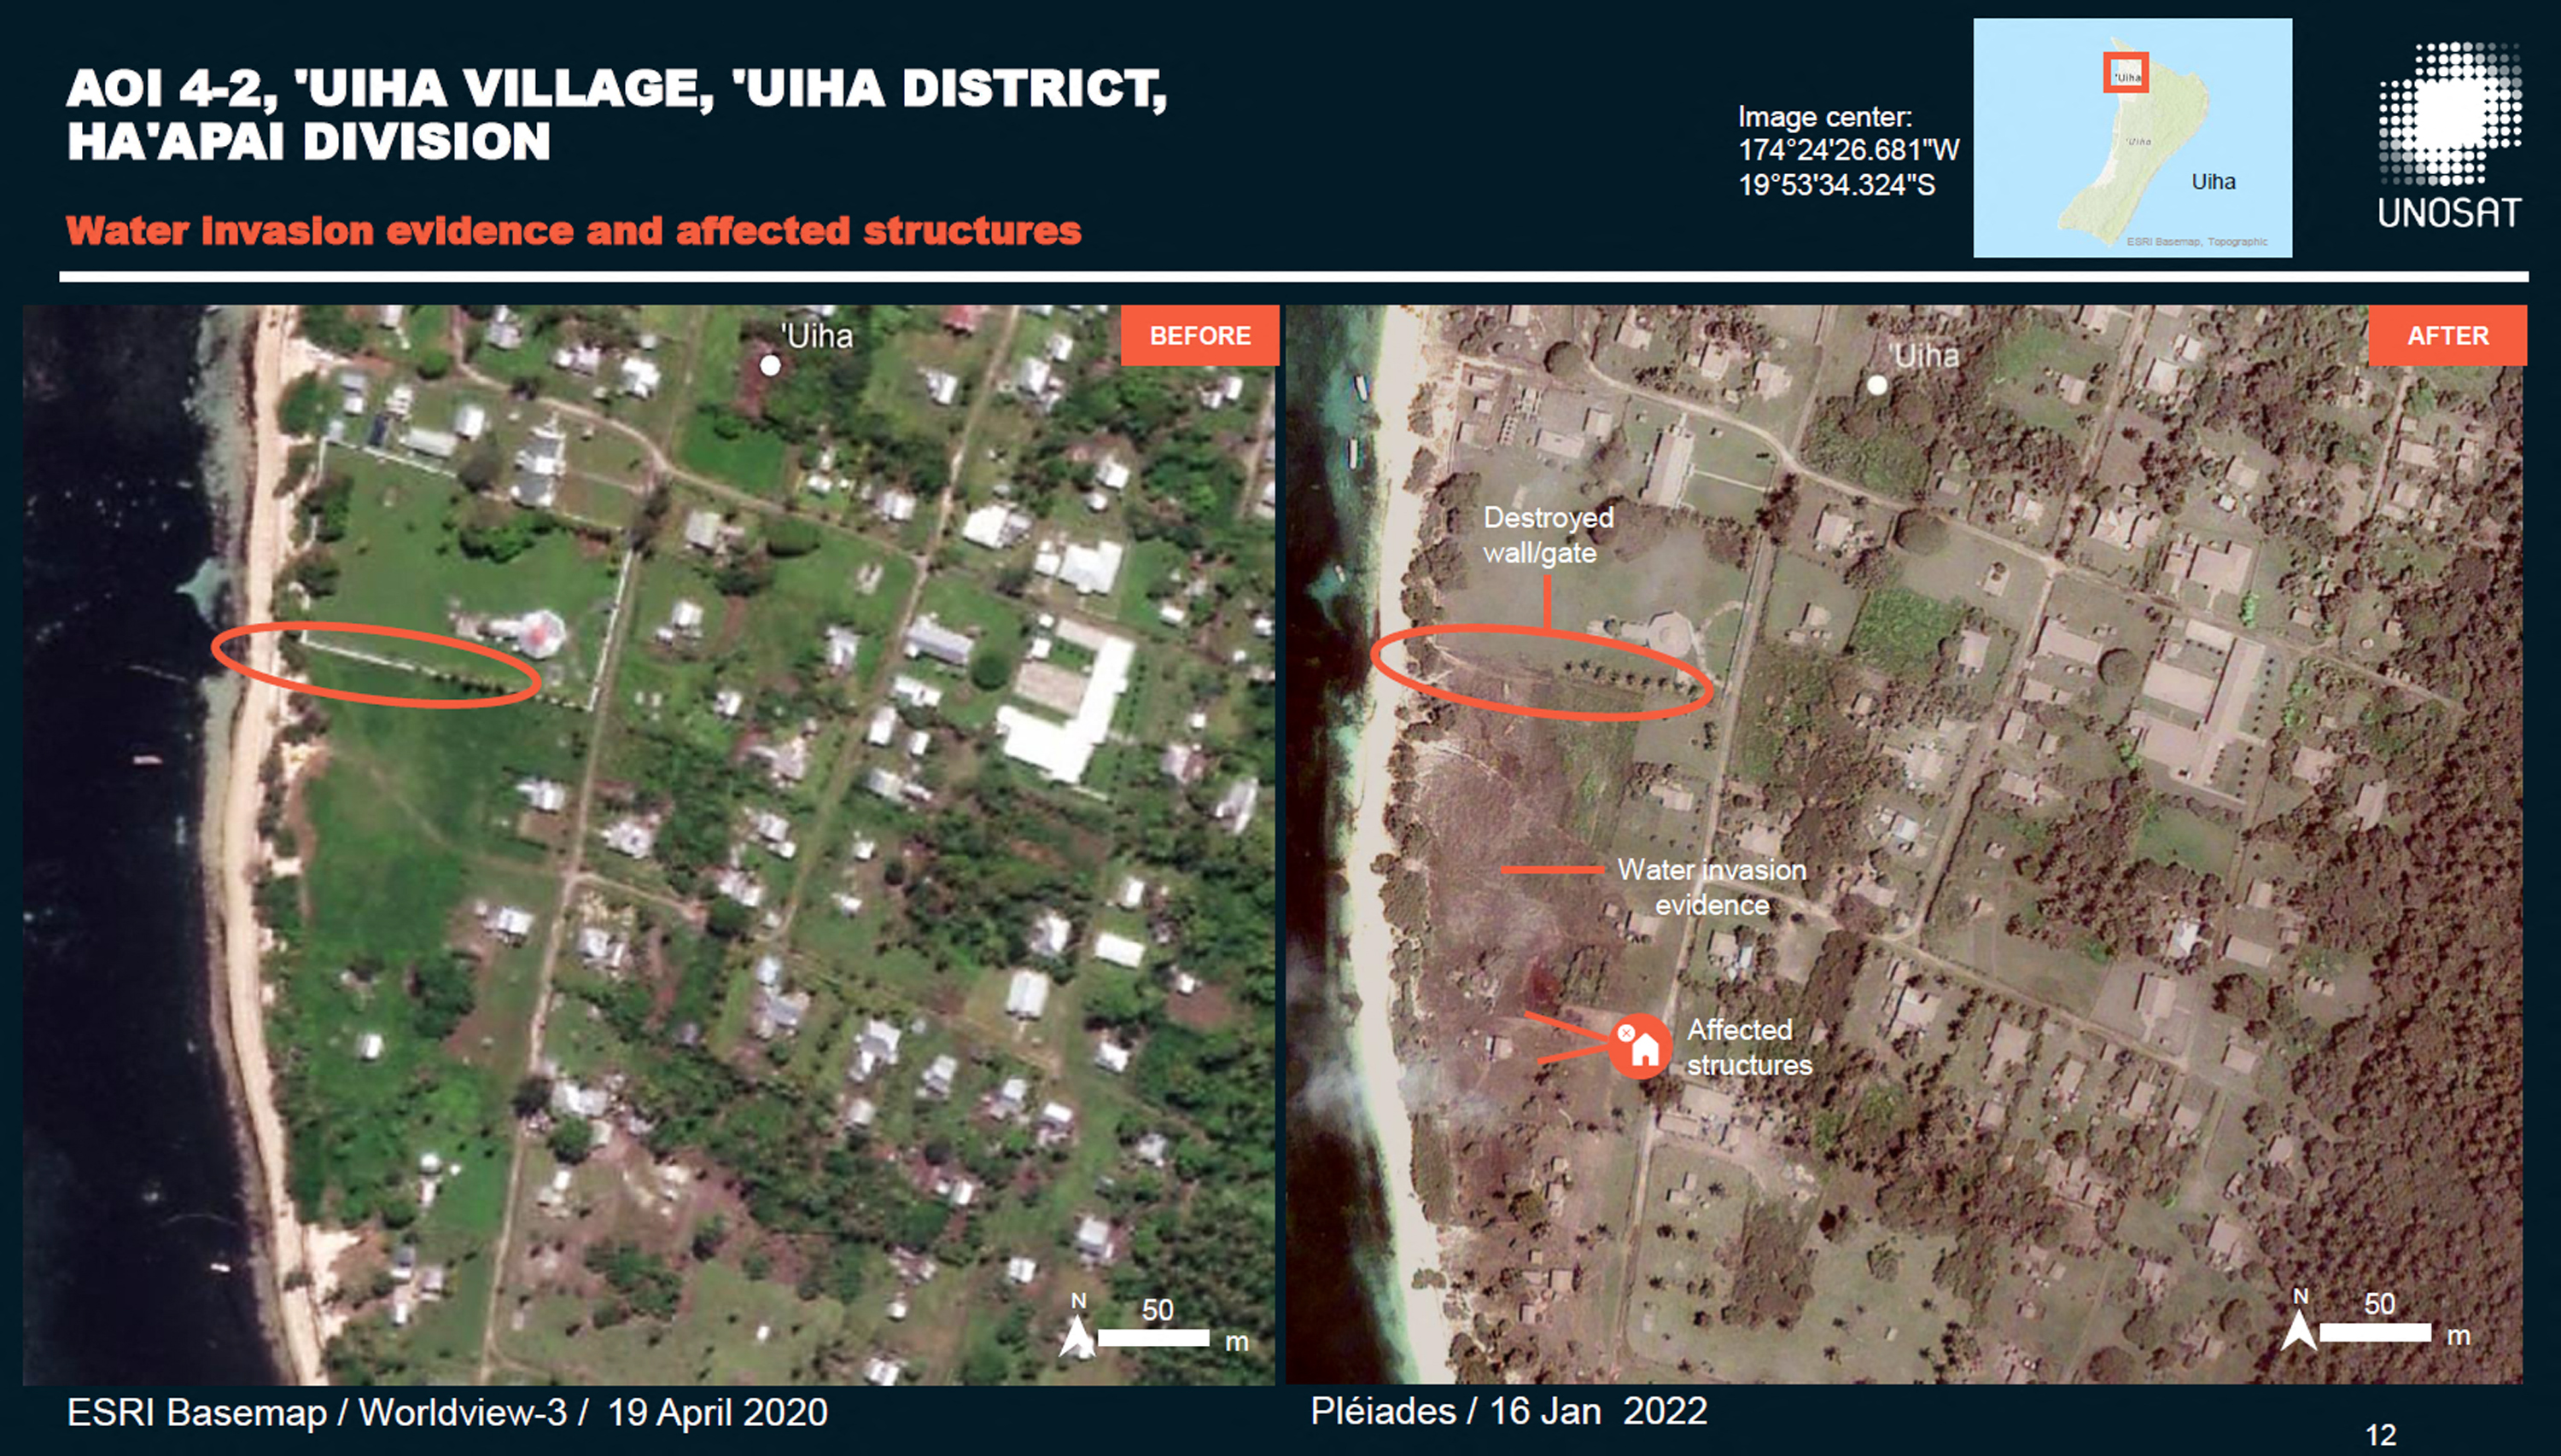 En Uhia hay registros de inundaciones y casas y rutas destruidas (AFP/ UNITAR / CNES/AIRBUS DS / ESRI BASEMAP)